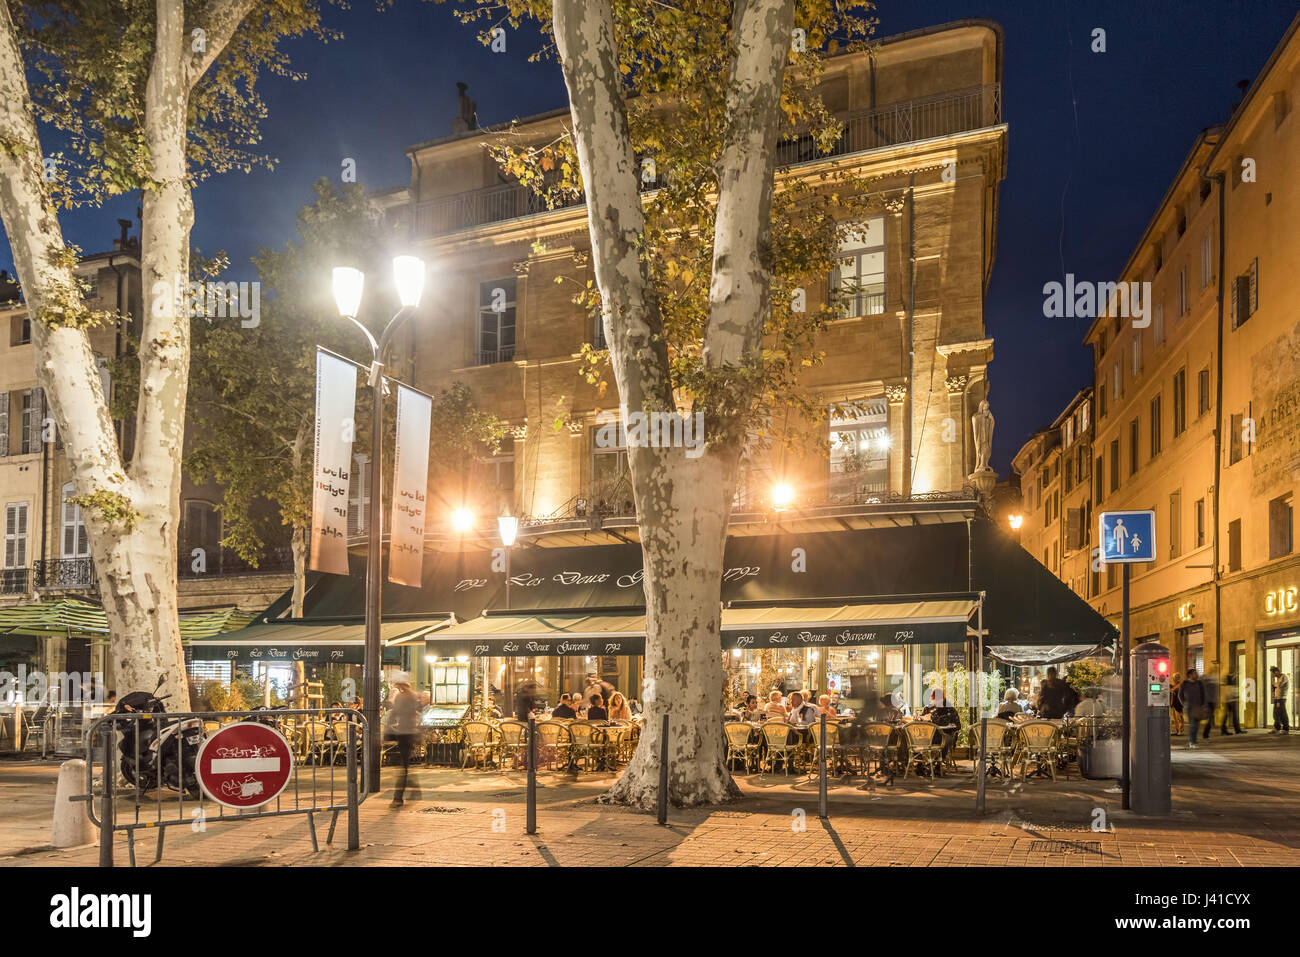 Les deux garçons, Street Cafe, Cours Mirabeau, rue le soir, Aix en Provence, Cote d'Azur, France Banque D'Images